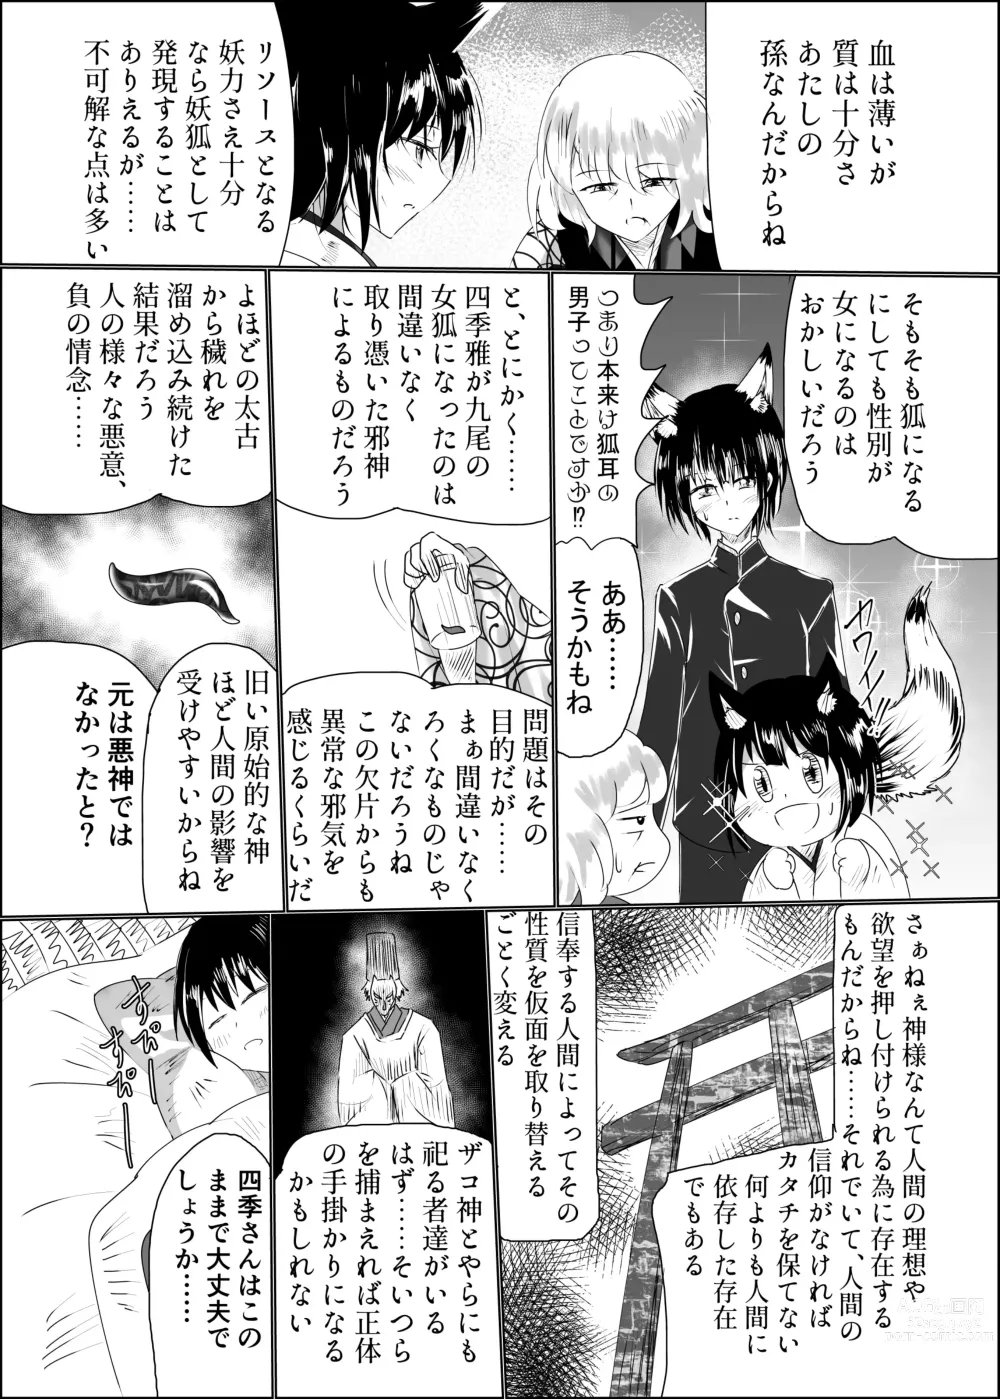 Page 6 of doujinshi Hako Tenjin